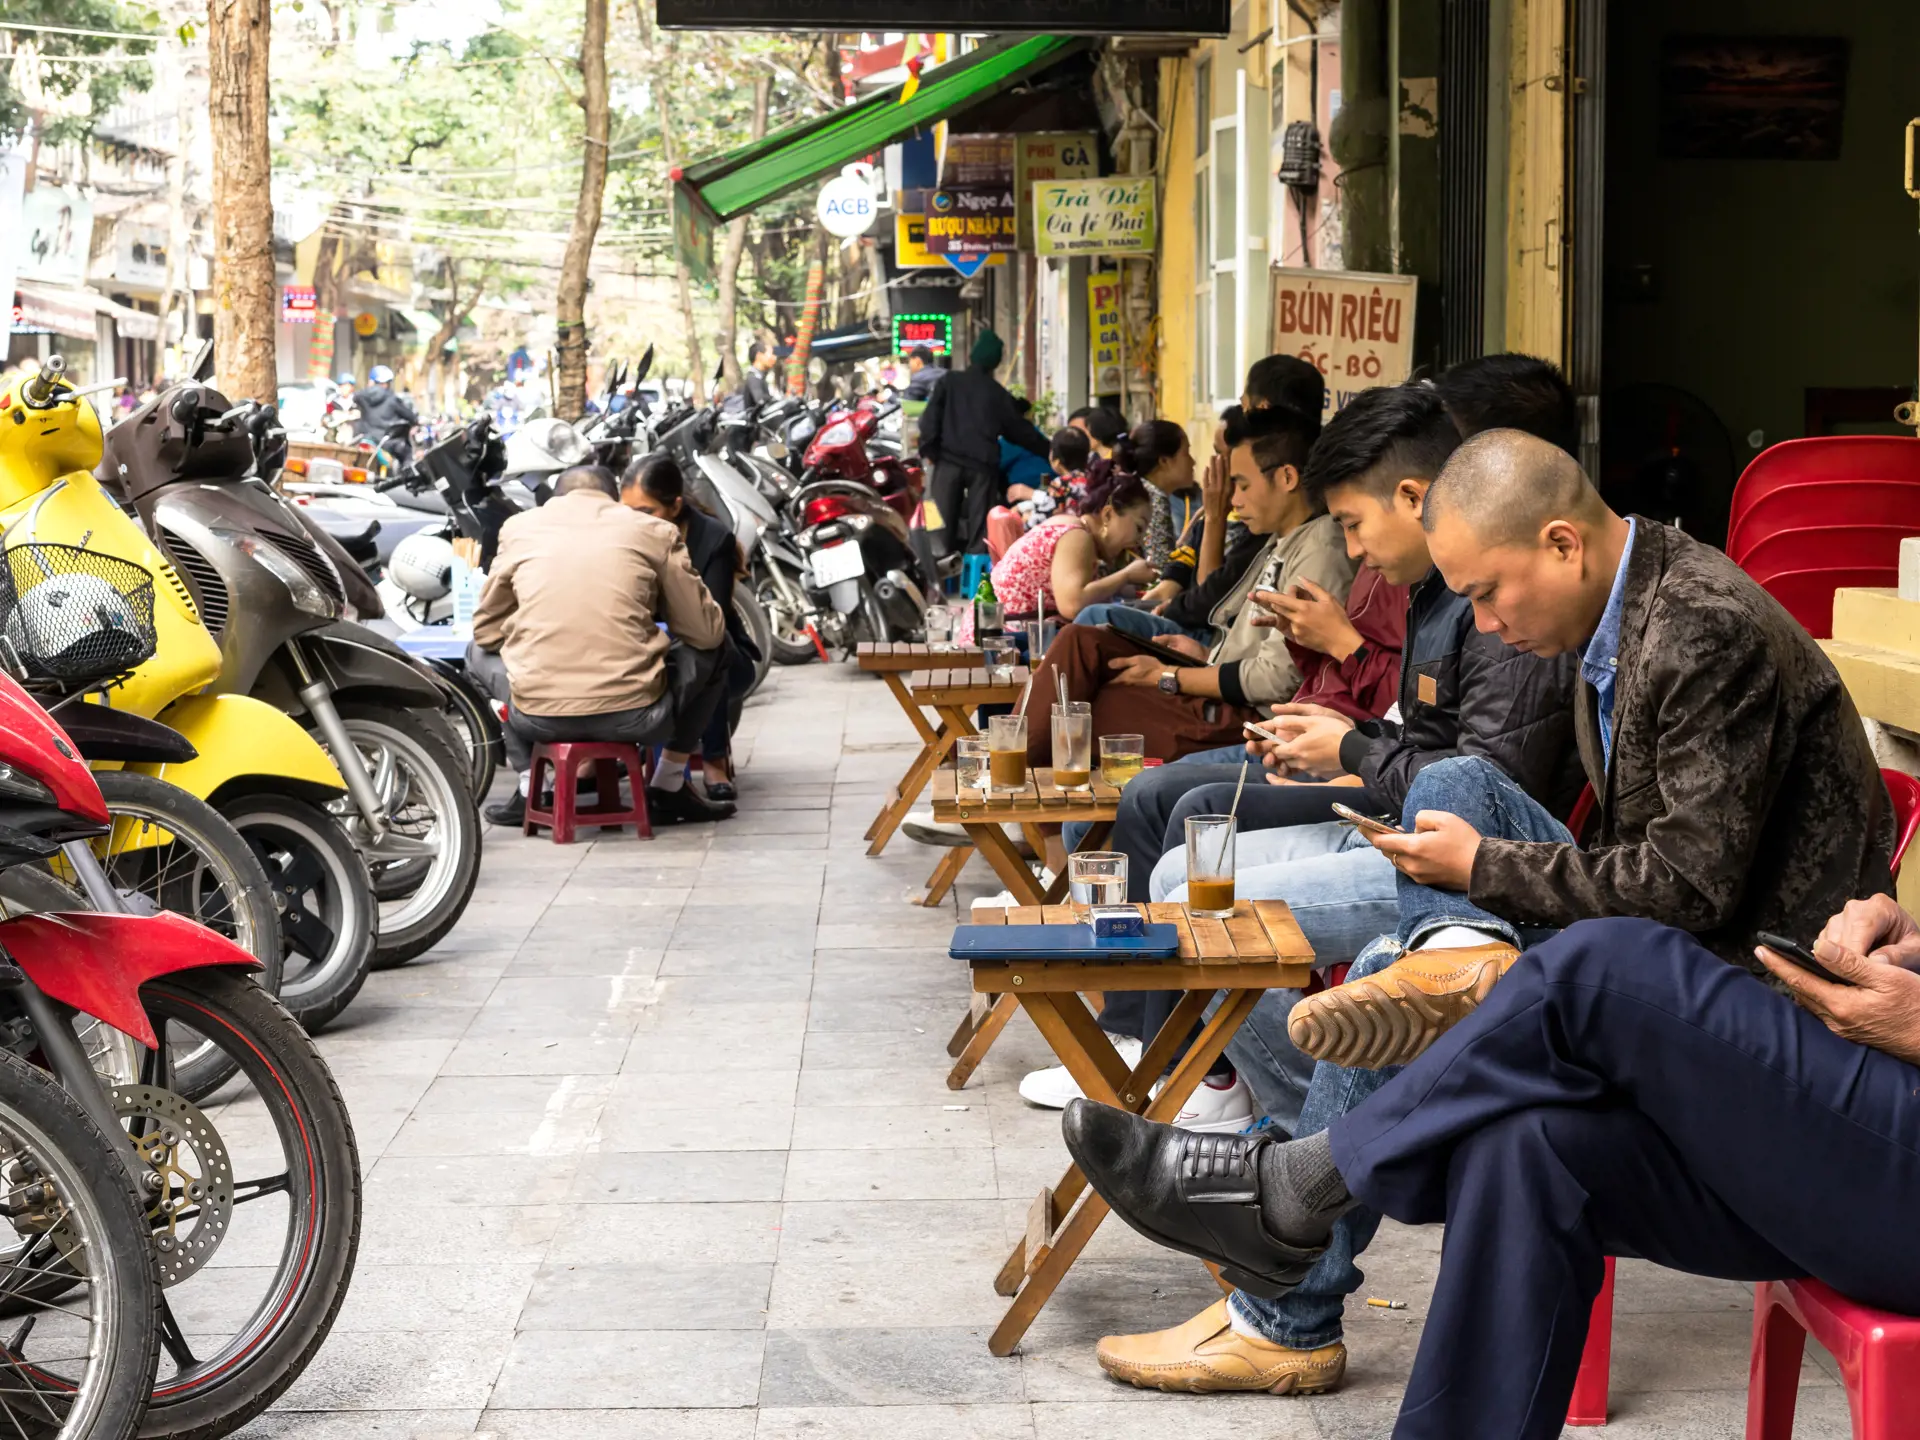 HANOI - Rejsen rundes af i Hanoi. Nyd en kop kaffe med de lokale i byens gamle kvarter.